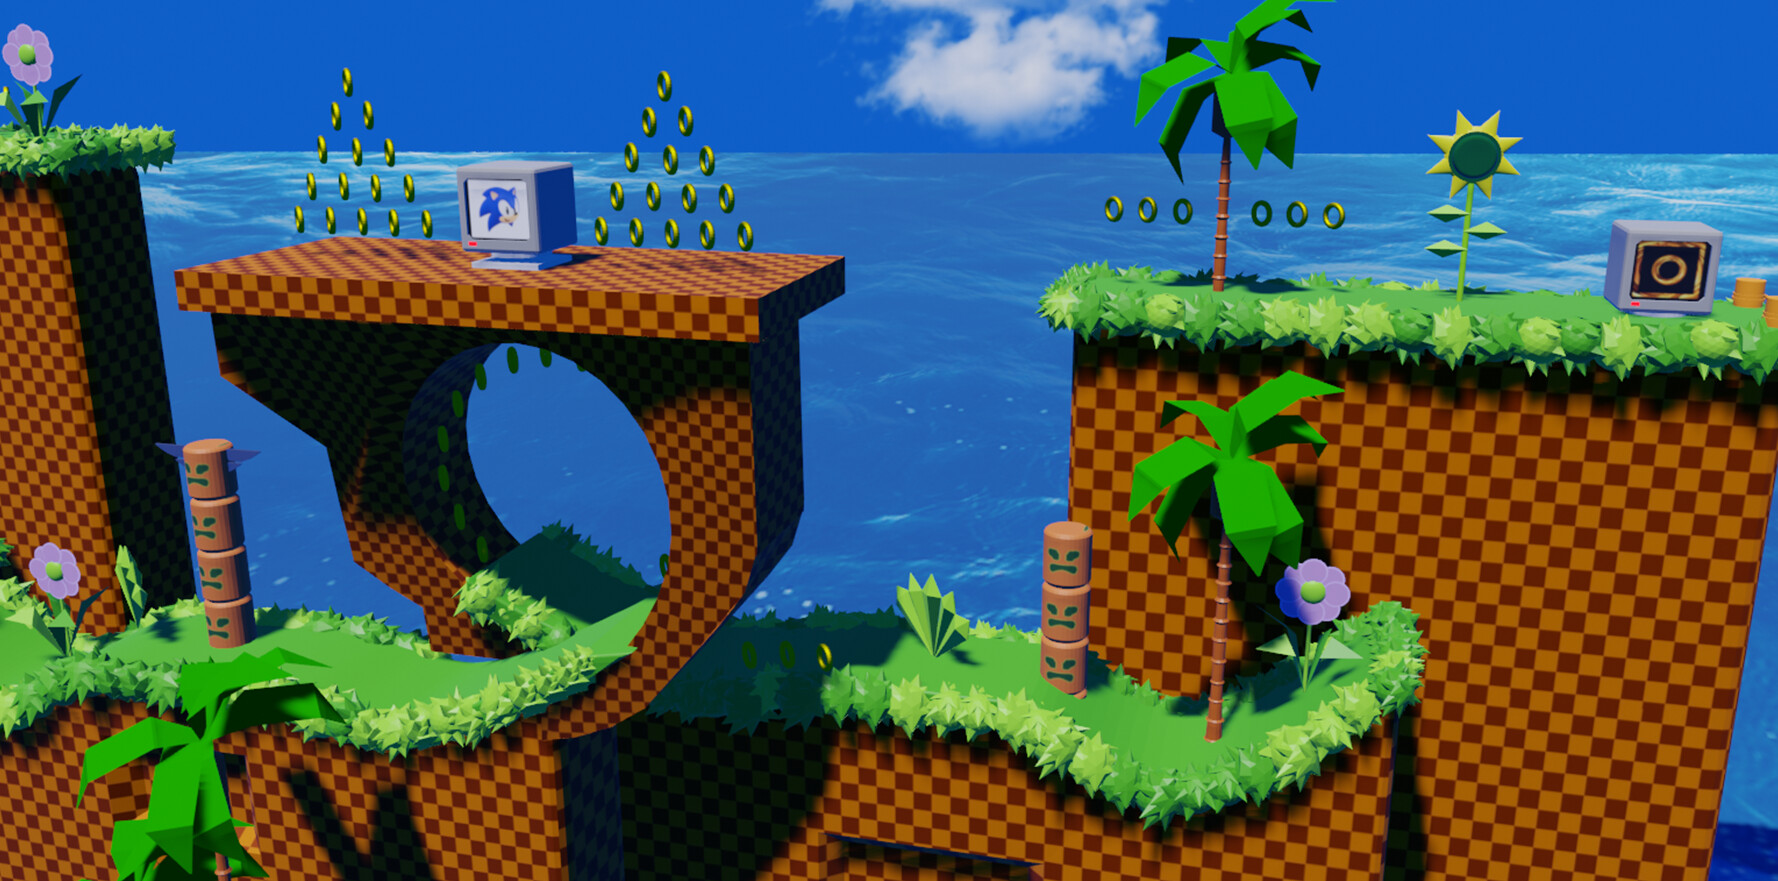 Chào mừng đến với Green Hill 3D Redesign | Sonic The Hedgehog tuyệt vời trên ArtStation! Bạn có tò mò về cách nhóm thiết kế đã tái hiện lại đại dương xanh và những rặng núi cỏ xanh lá dày đặc của “huyền thoại” Sonic nổi tiếng? Hãy cùng thưởng thức bức tranh ấn tượng này ngay!